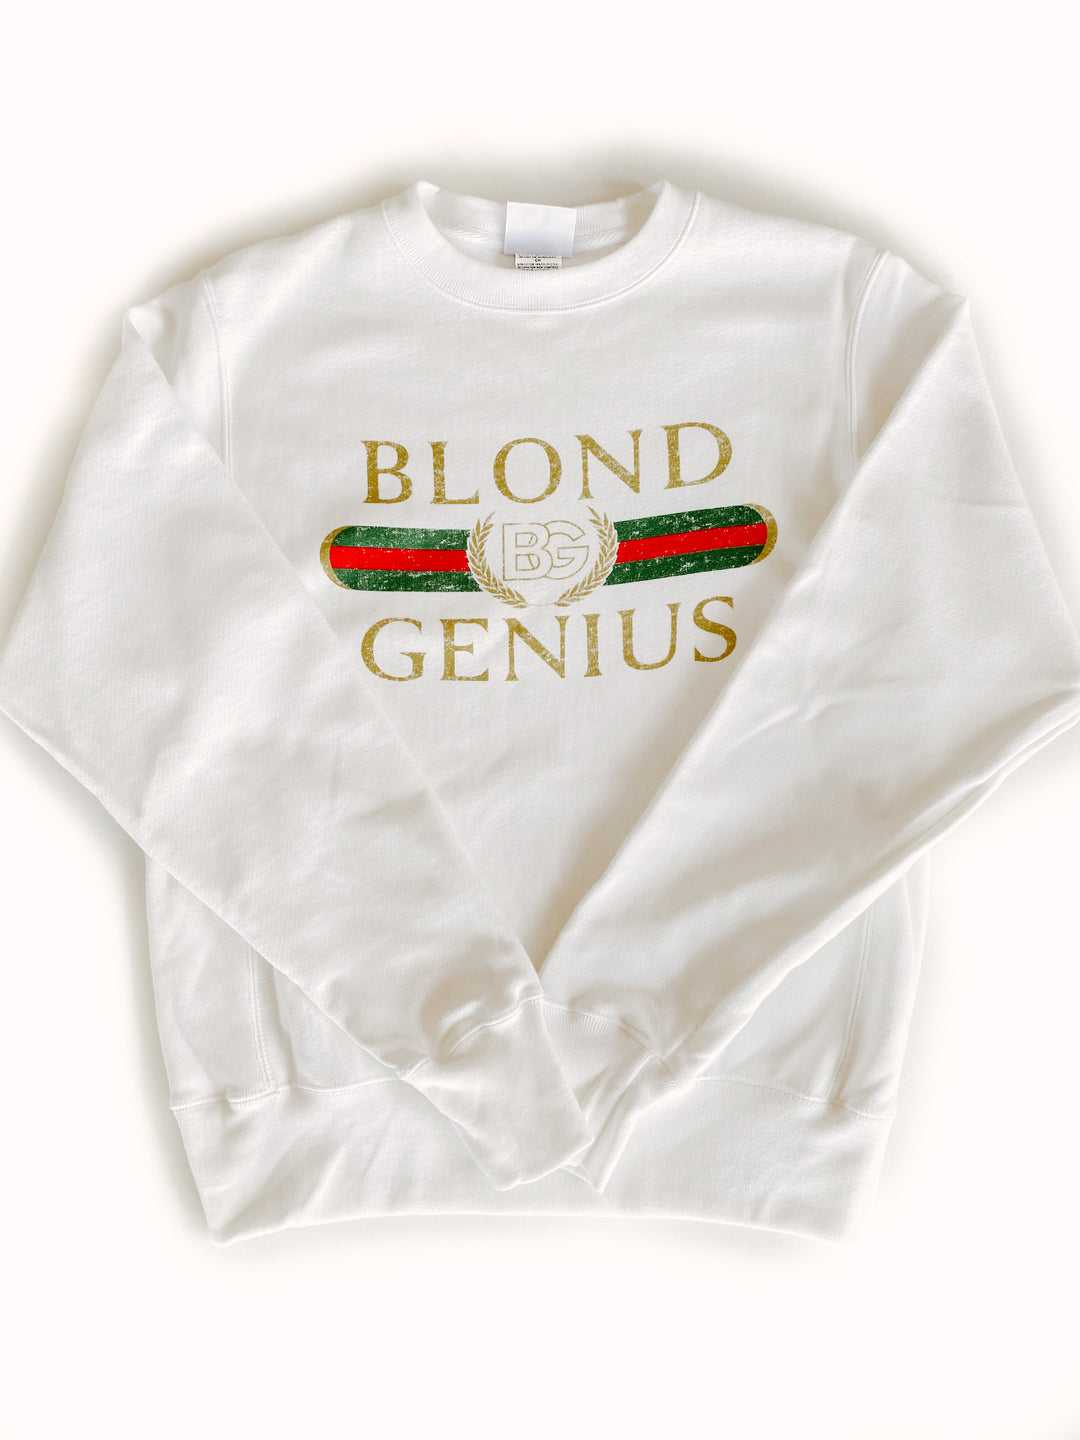 Blond Genius - Vintage 'Blond Genius' Crewneck Sweatshirt in White